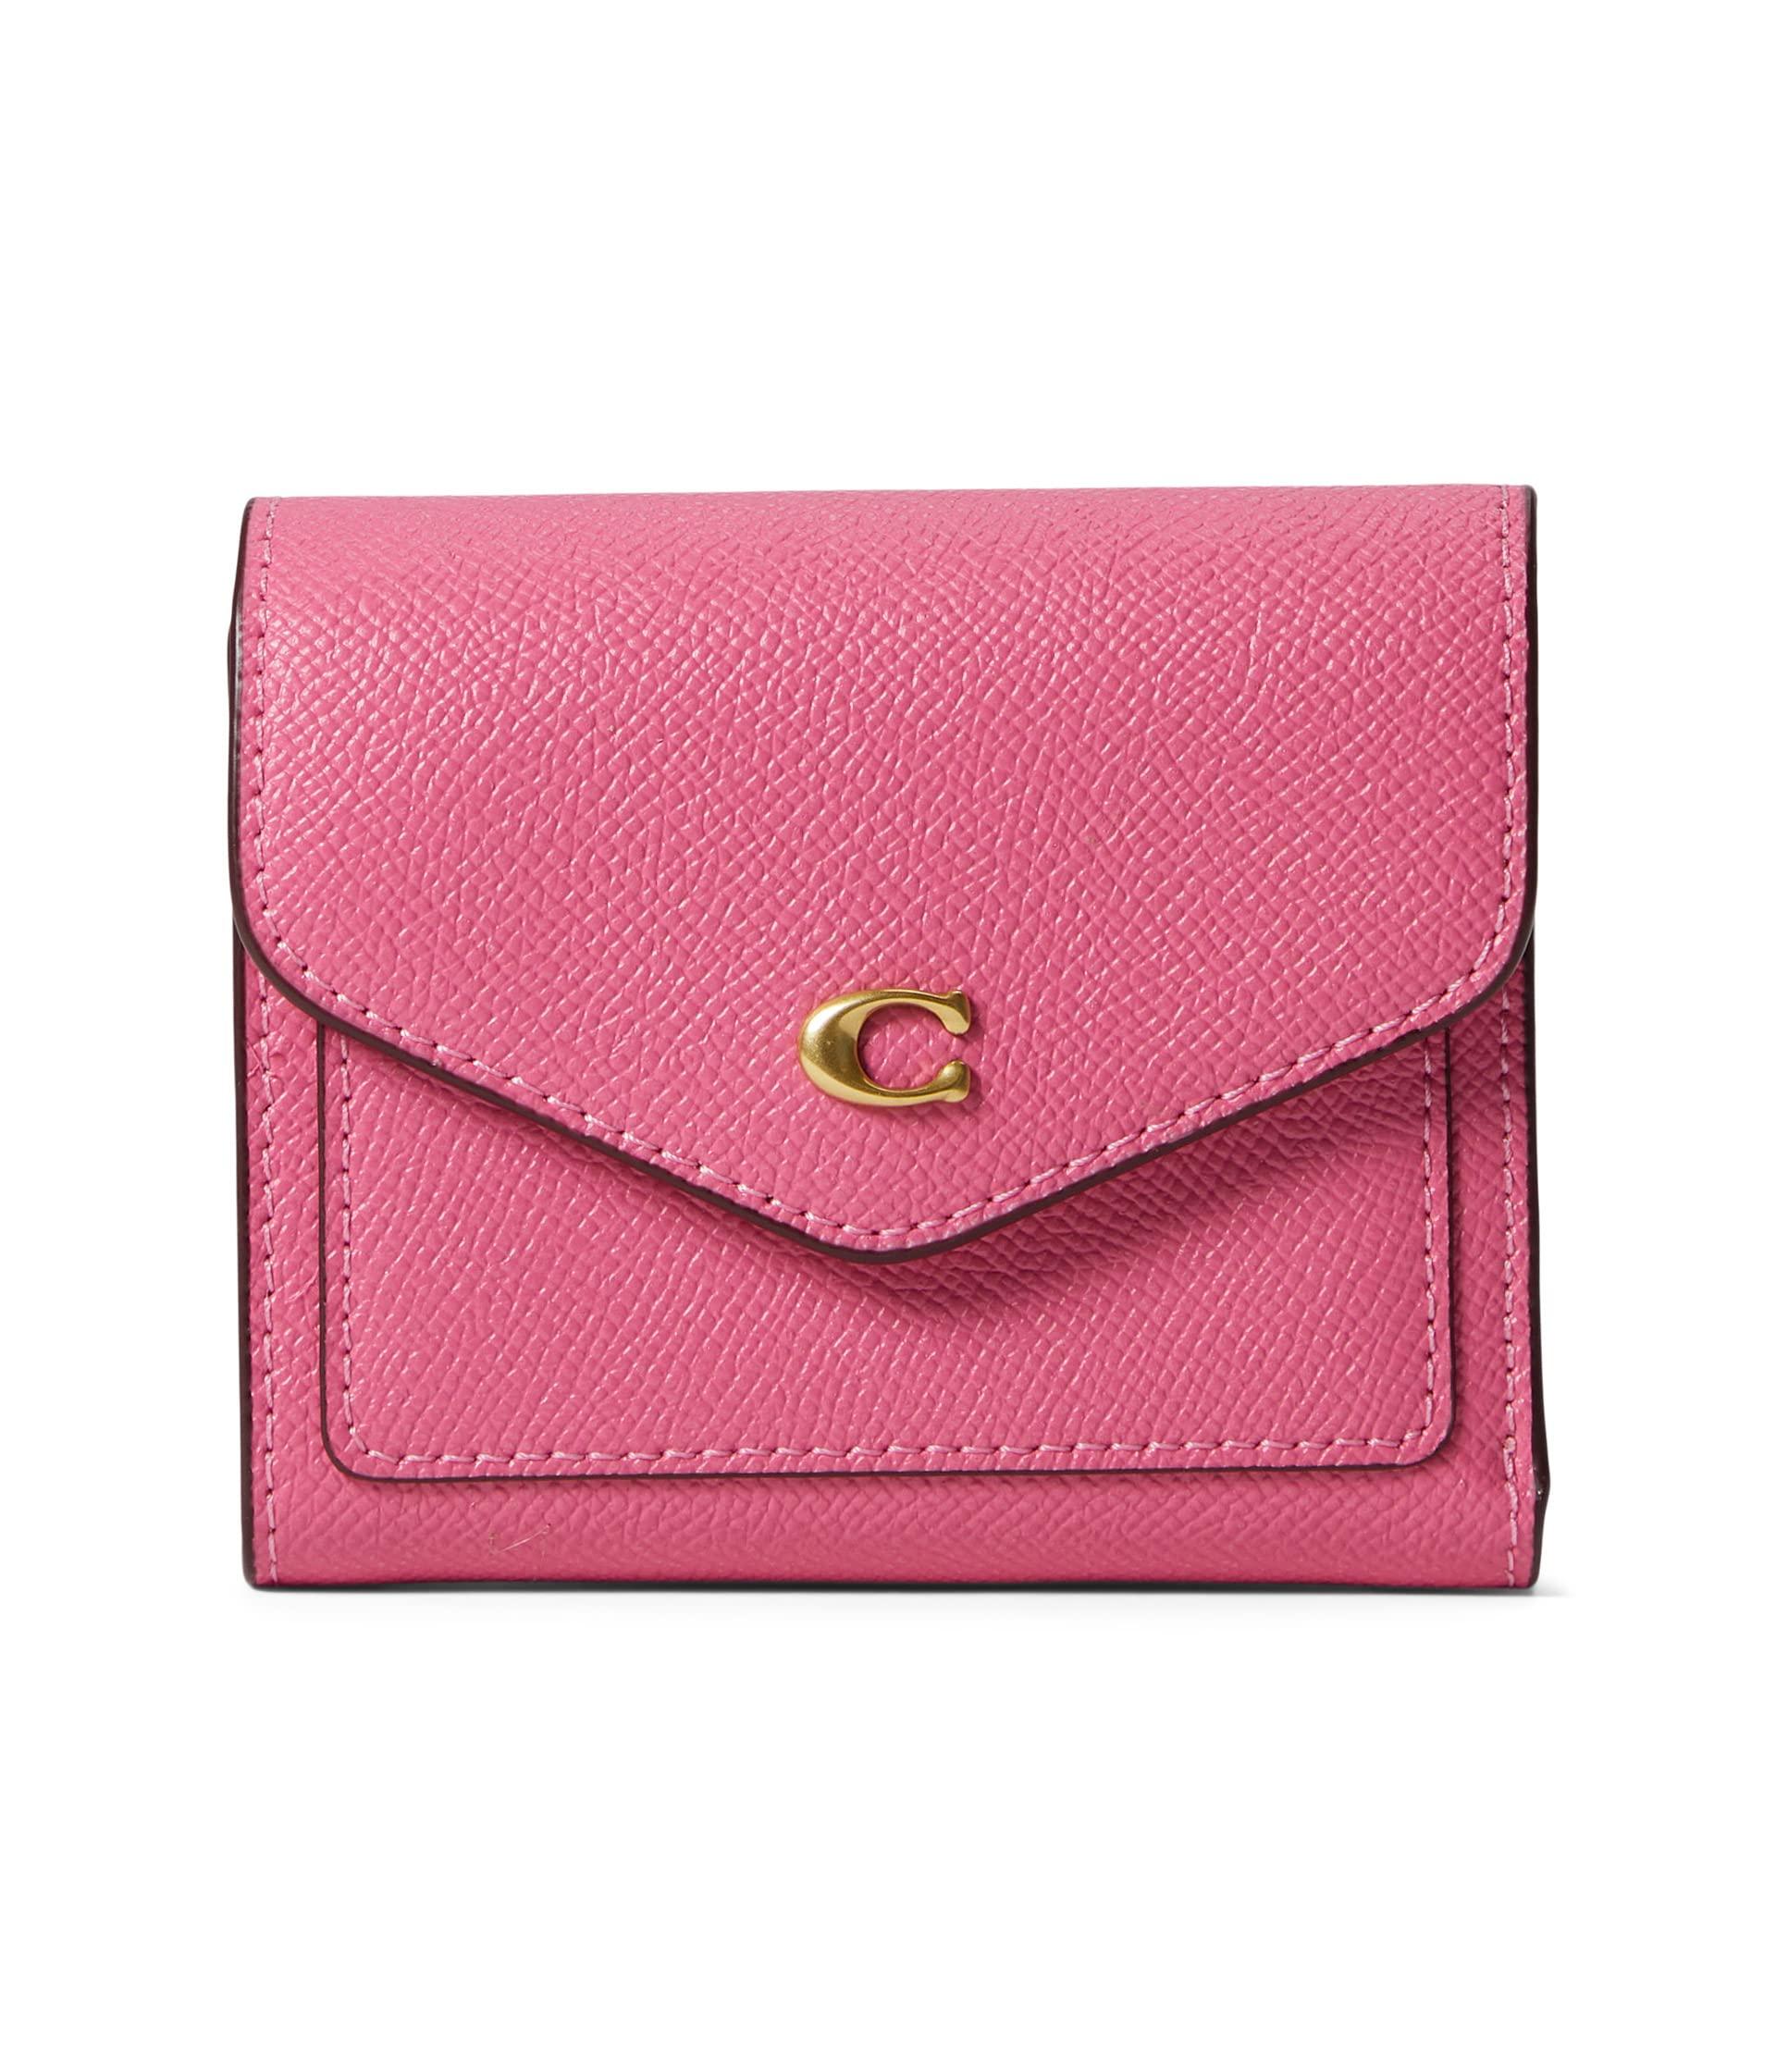 COACH Cross Grain Leather Wyn Small Wallet in Pink